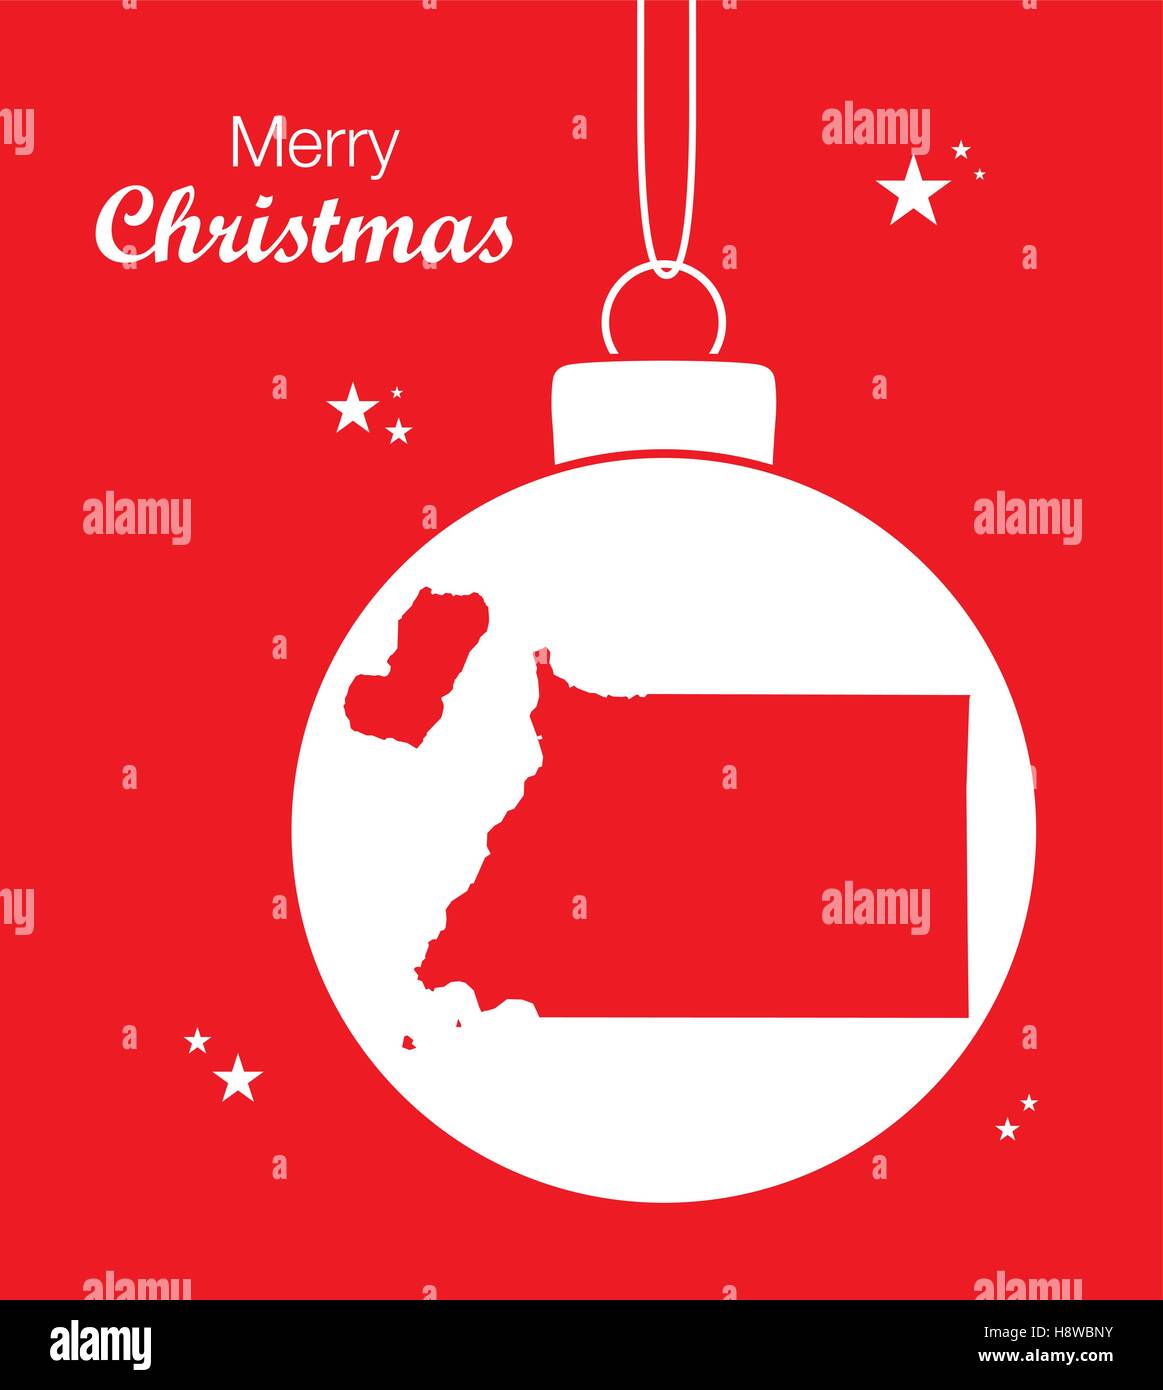 Joyeux Noël thème d'illustration avec la carte de Guinée équatoriale Illustration de Vecteur